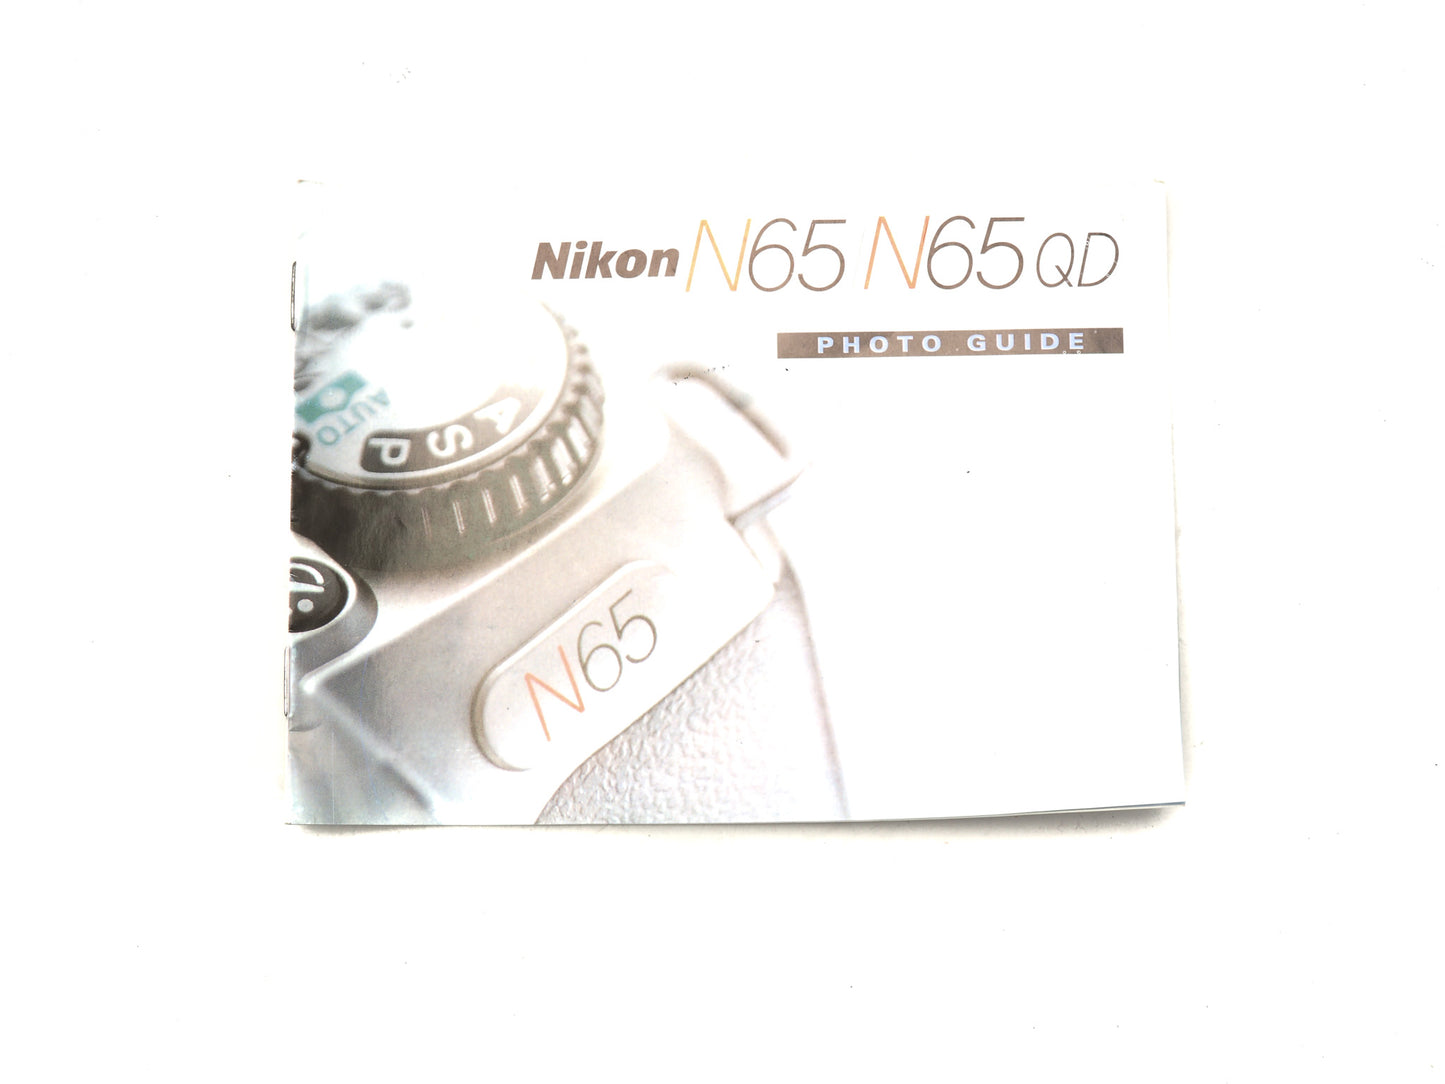 Nikon N65 / N65 QD Photo Guide